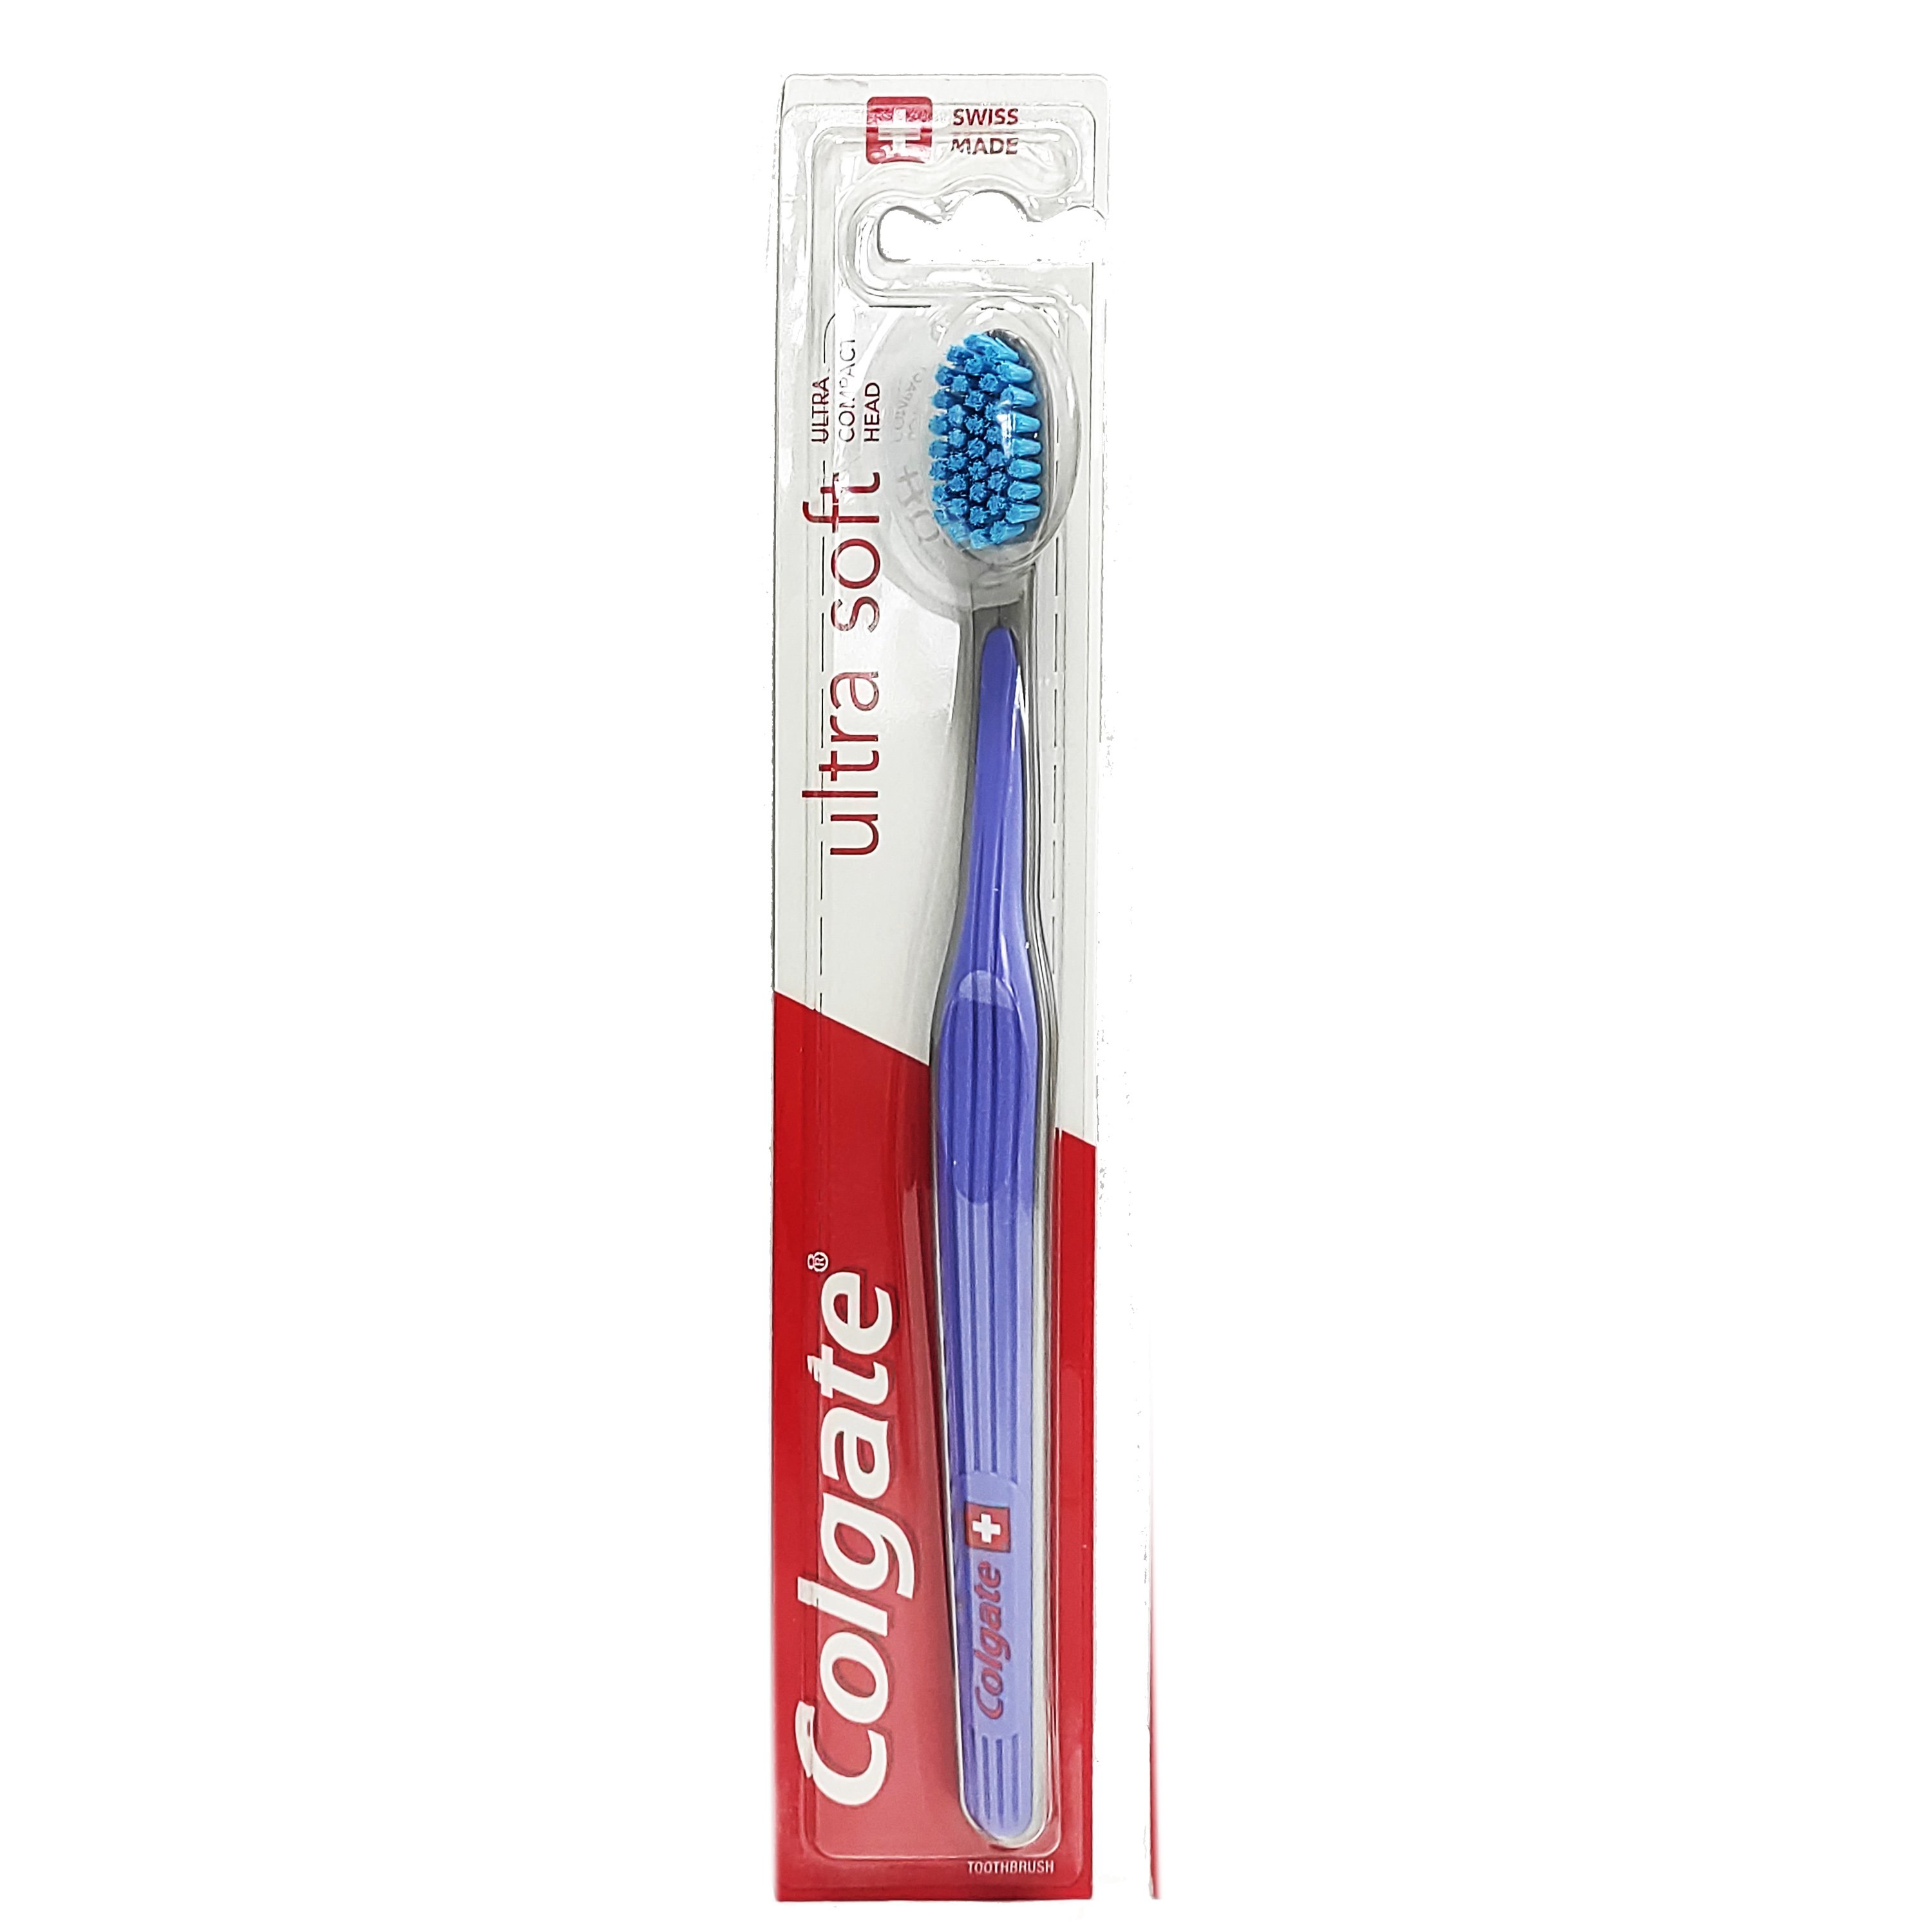 Colgate Ultra Soft Toothbrush Οδοντόβουρτσα με Πολύ Μαλακές Ίνες, Κατά της Πλάκας & των Επιφανειακών Χρωματικών Λεκέδων 1 Τεμάχιο – Μωβ